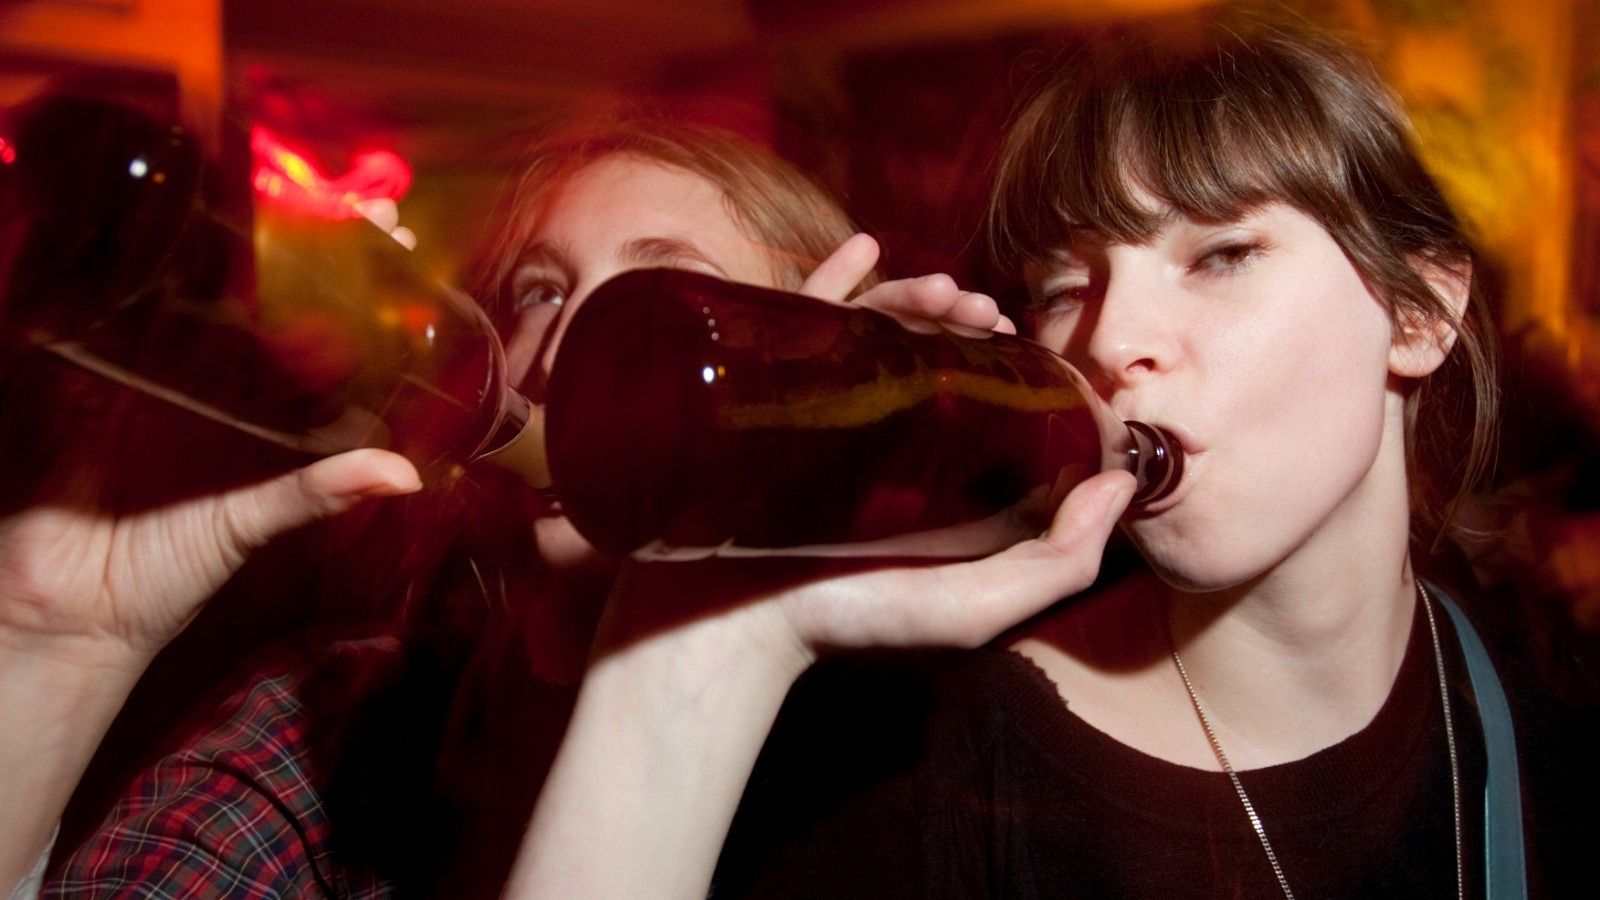 El consumo de alcohol en la adolescencia aumenta el riesgo de desarrollar cáncer de mama en etapas posteriores.